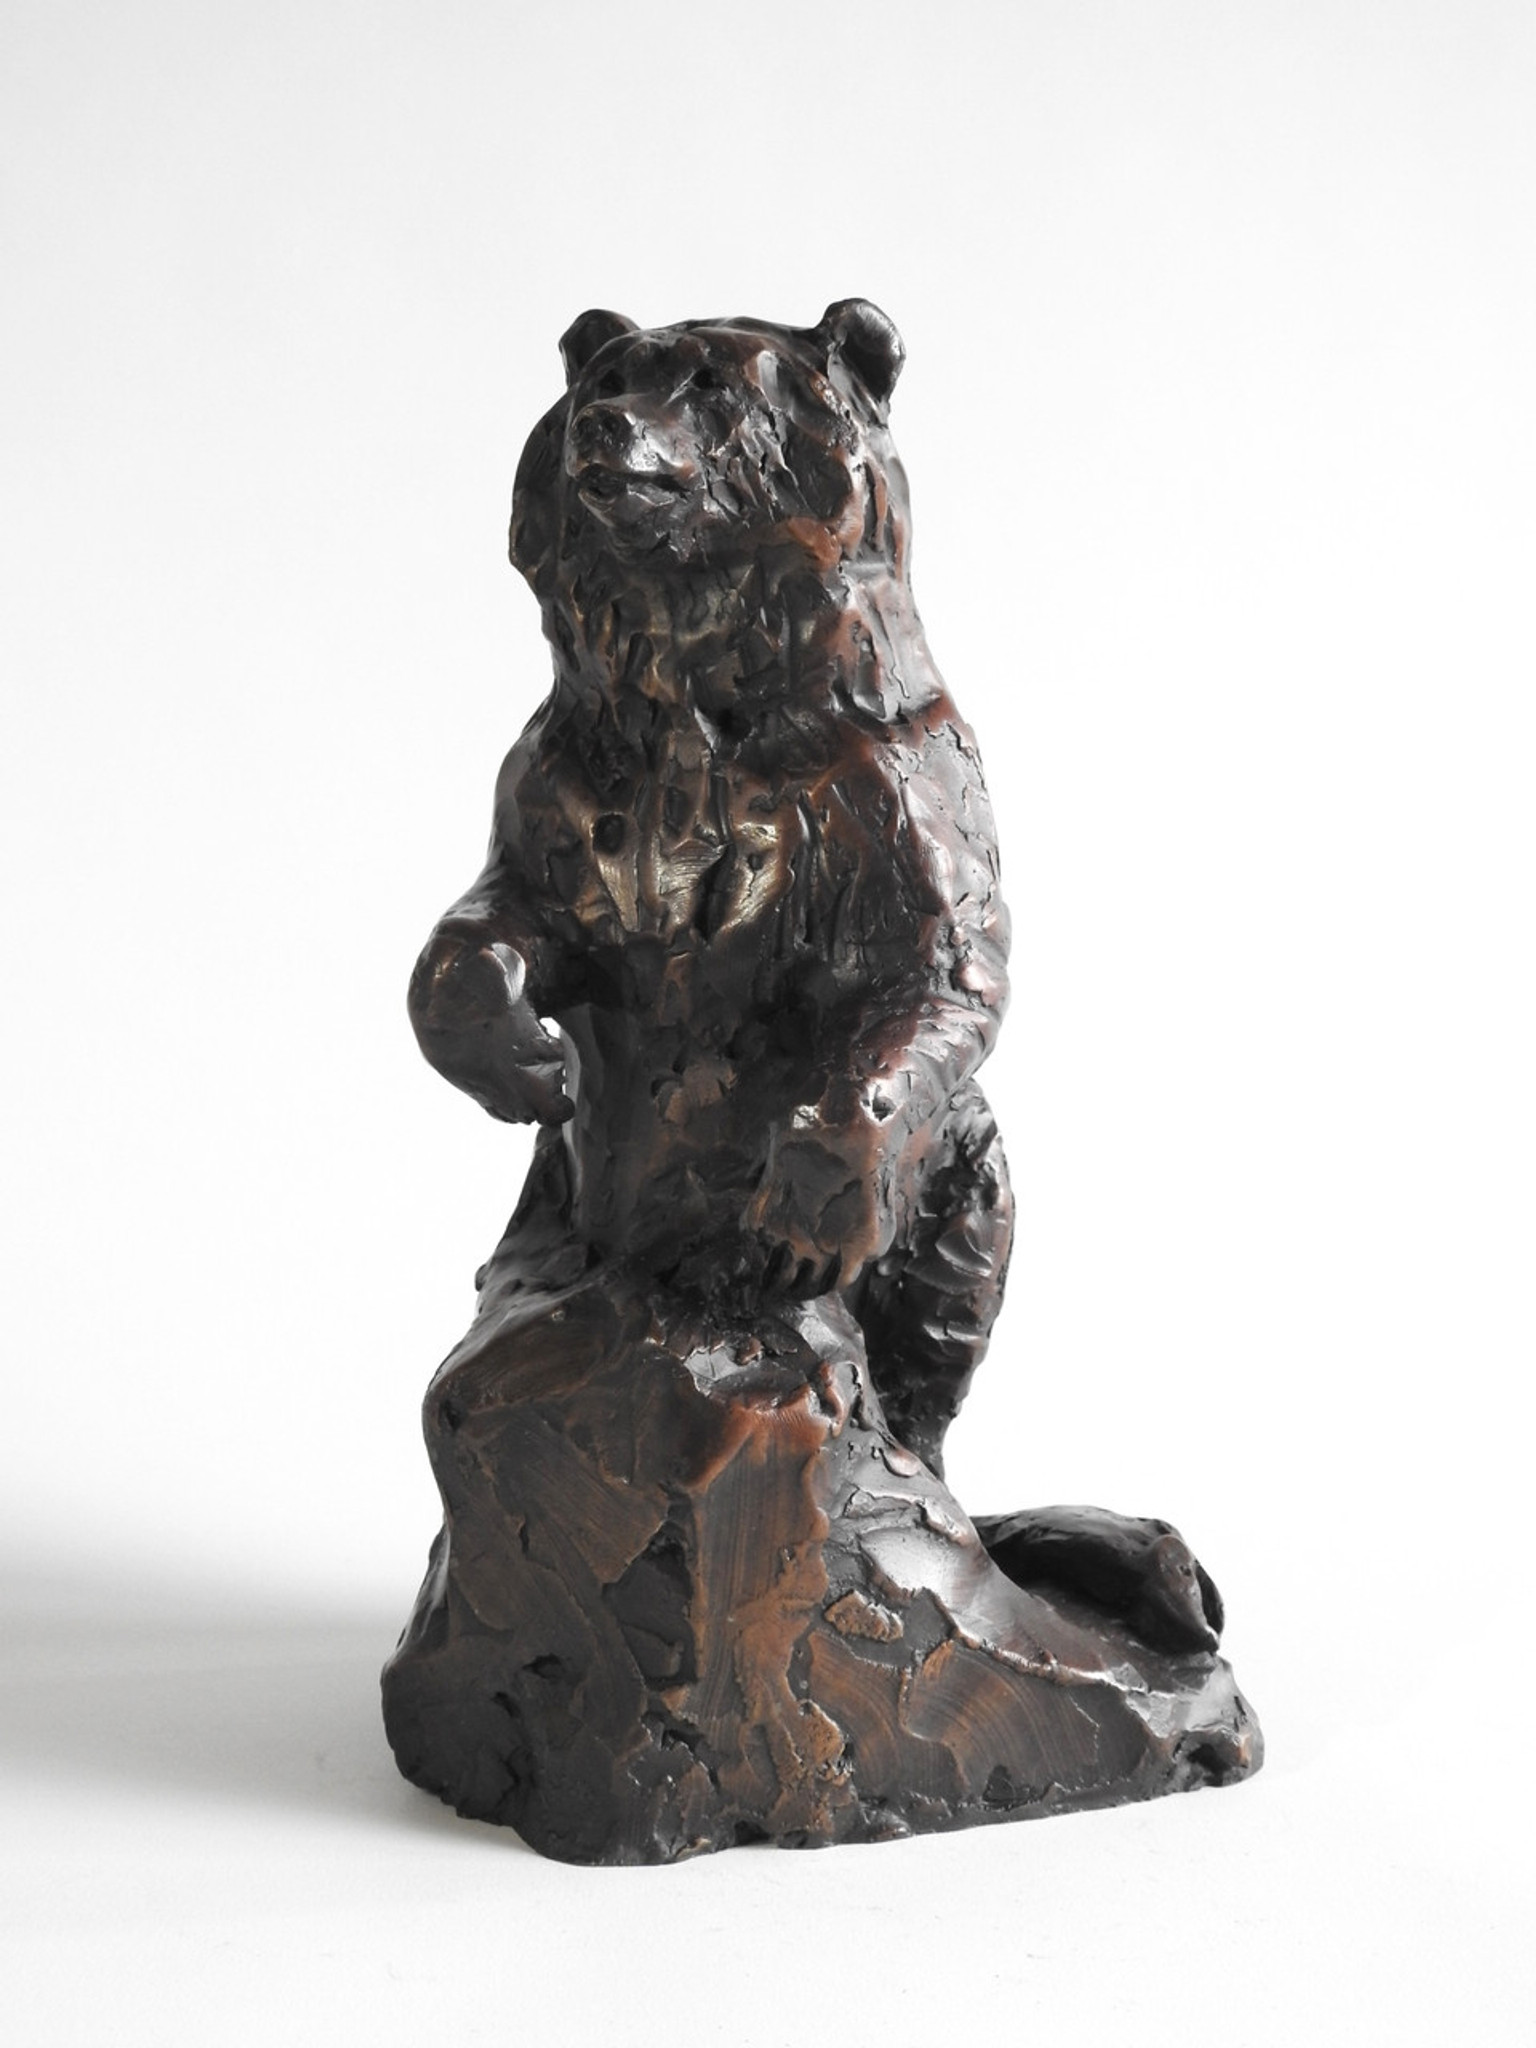 Kindrie Grove Feast Interrupted, 8", Bronze Bear Sculpture 